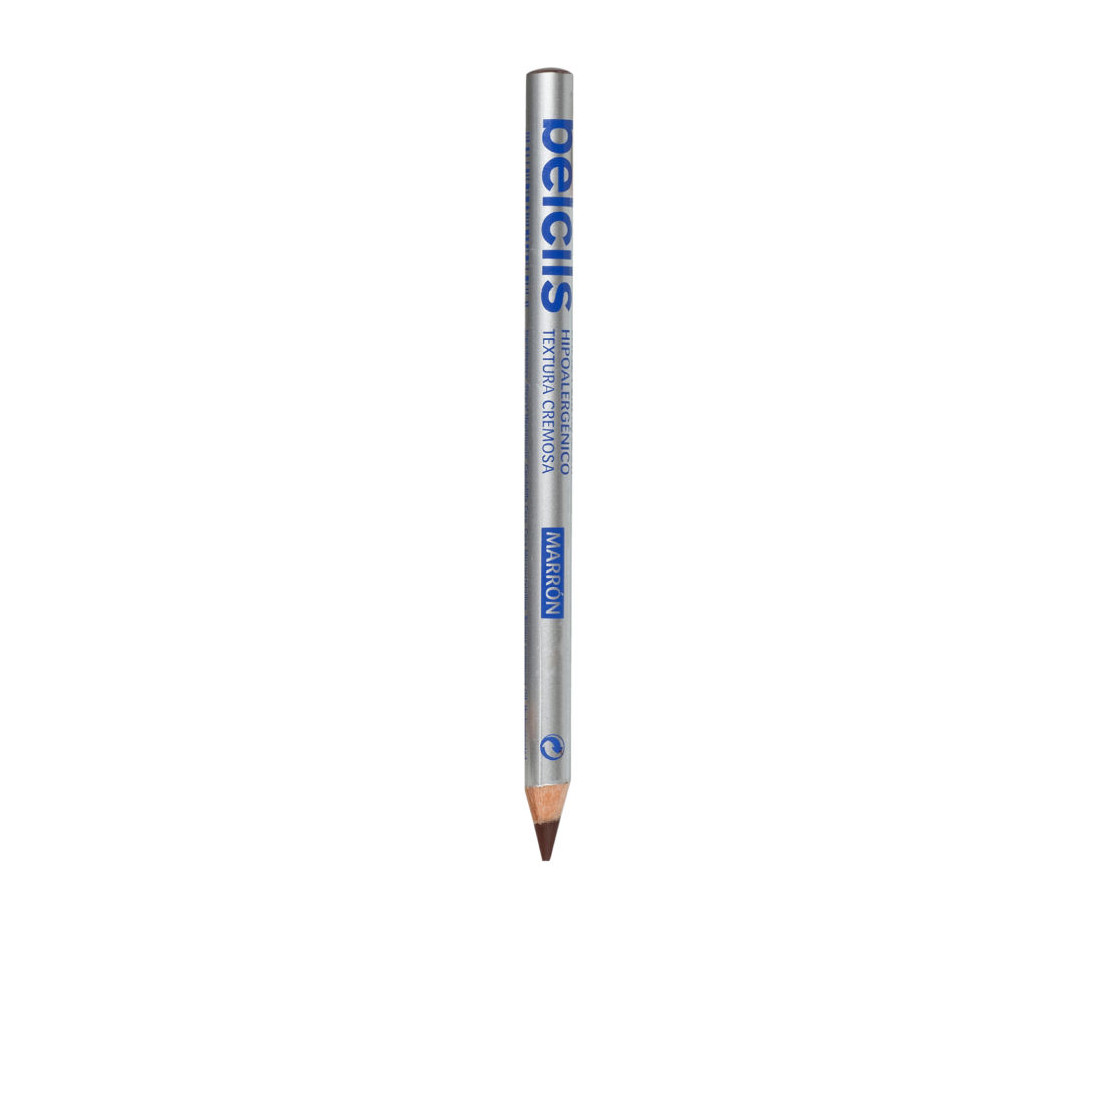 BELCILS SENSITIVE EYES crayon yeux marron 1.4 gr